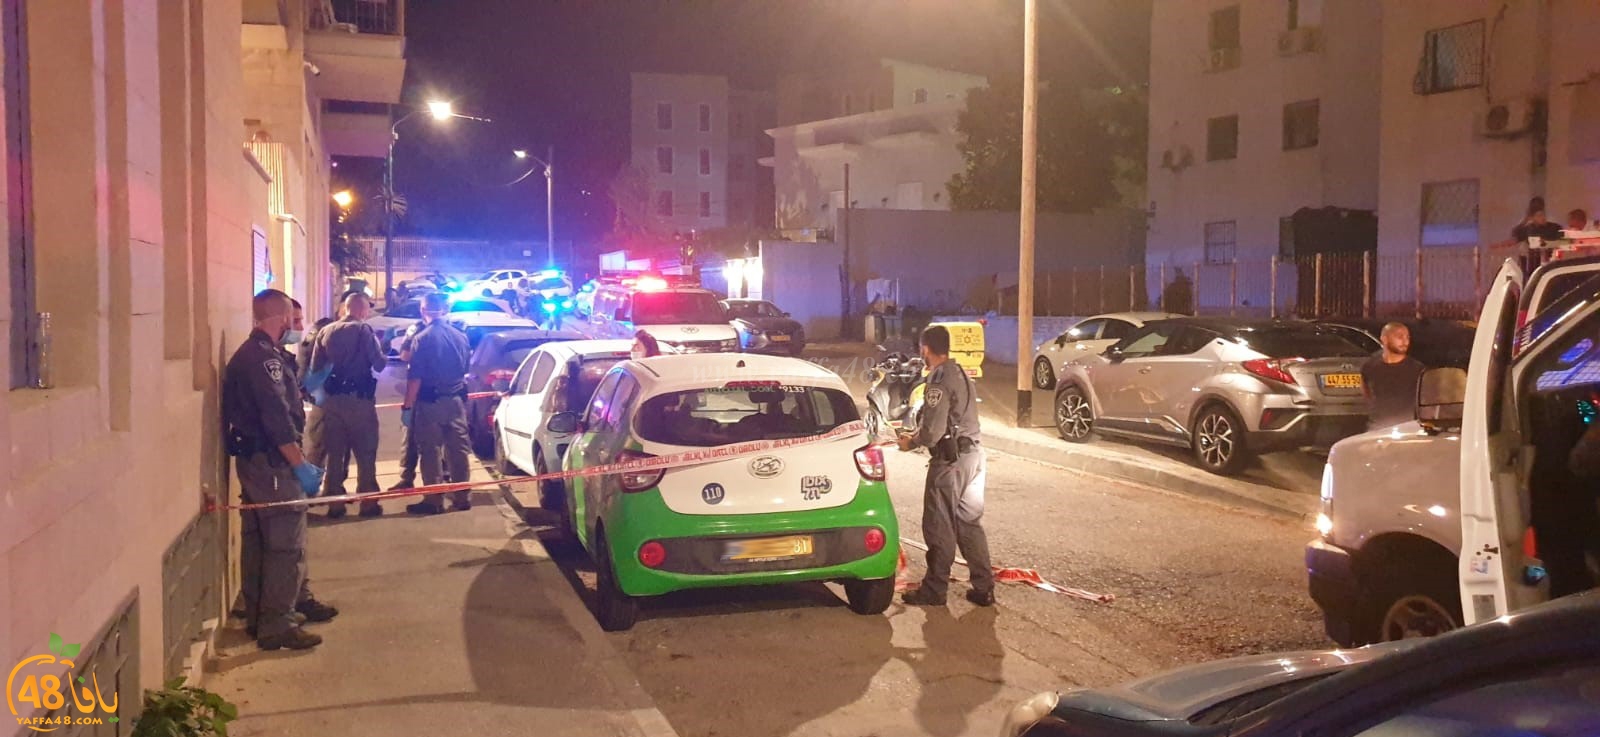  يافا: إطلاق نار بحي الجبلية وأنباء عن اصابة شخص بجروح خطرة 